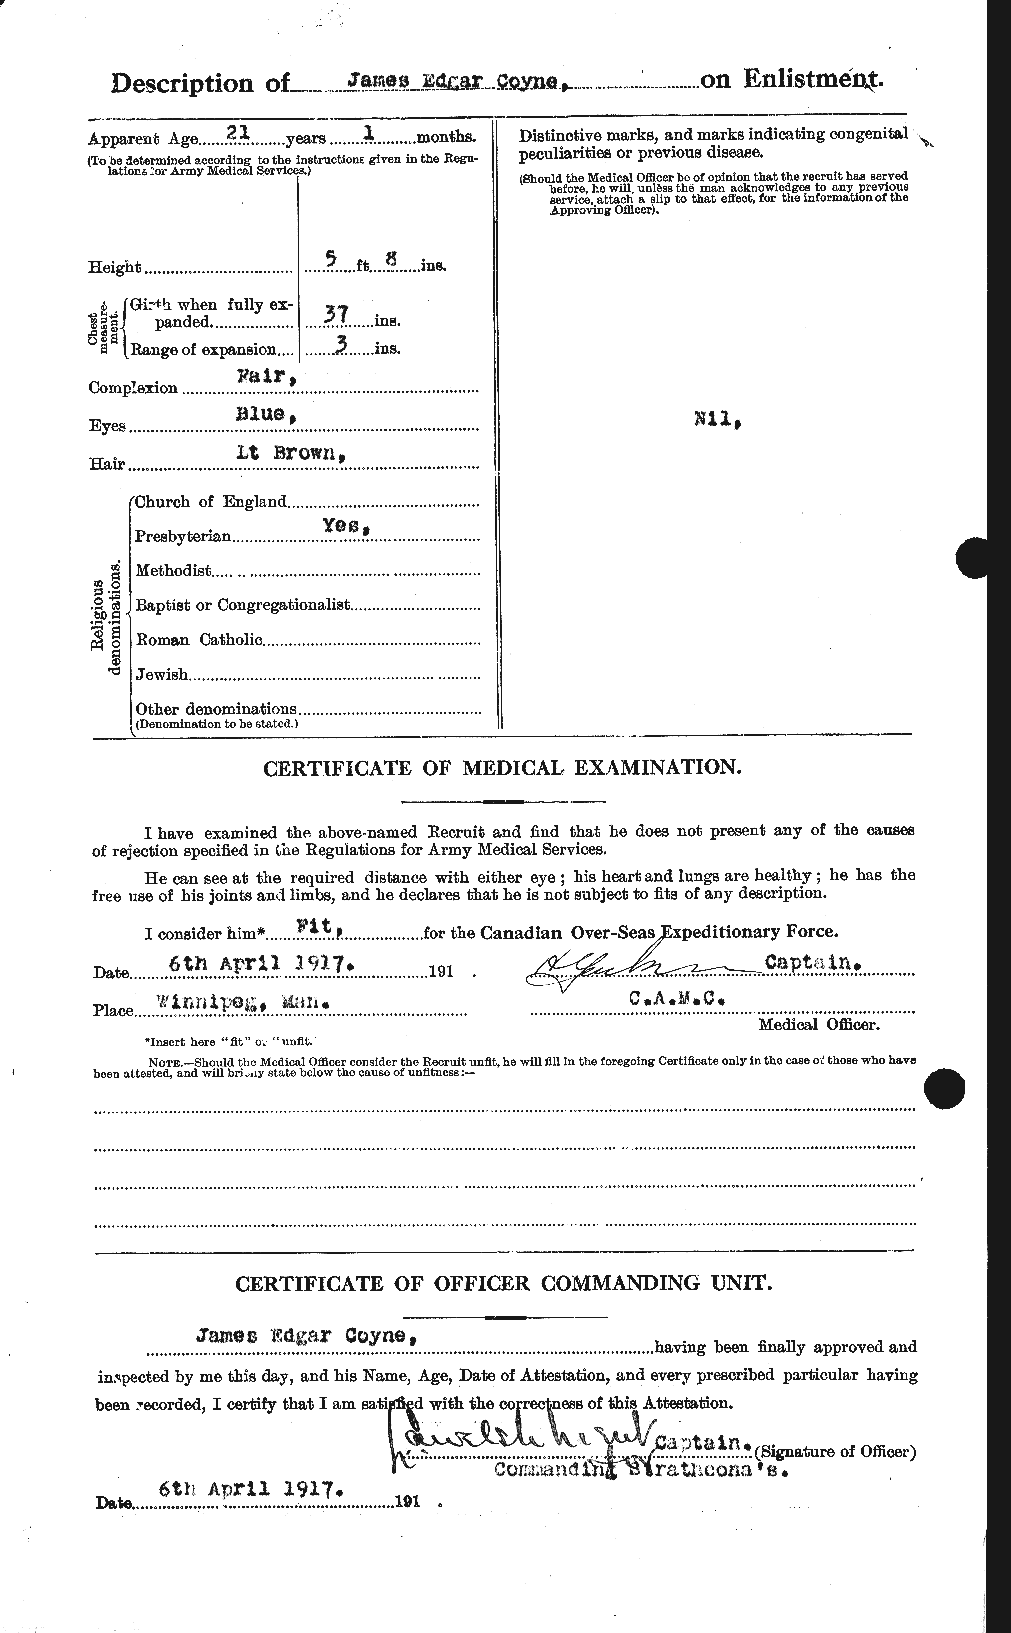 Dossiers du Personnel de la Première Guerre mondiale - CEC 062322b